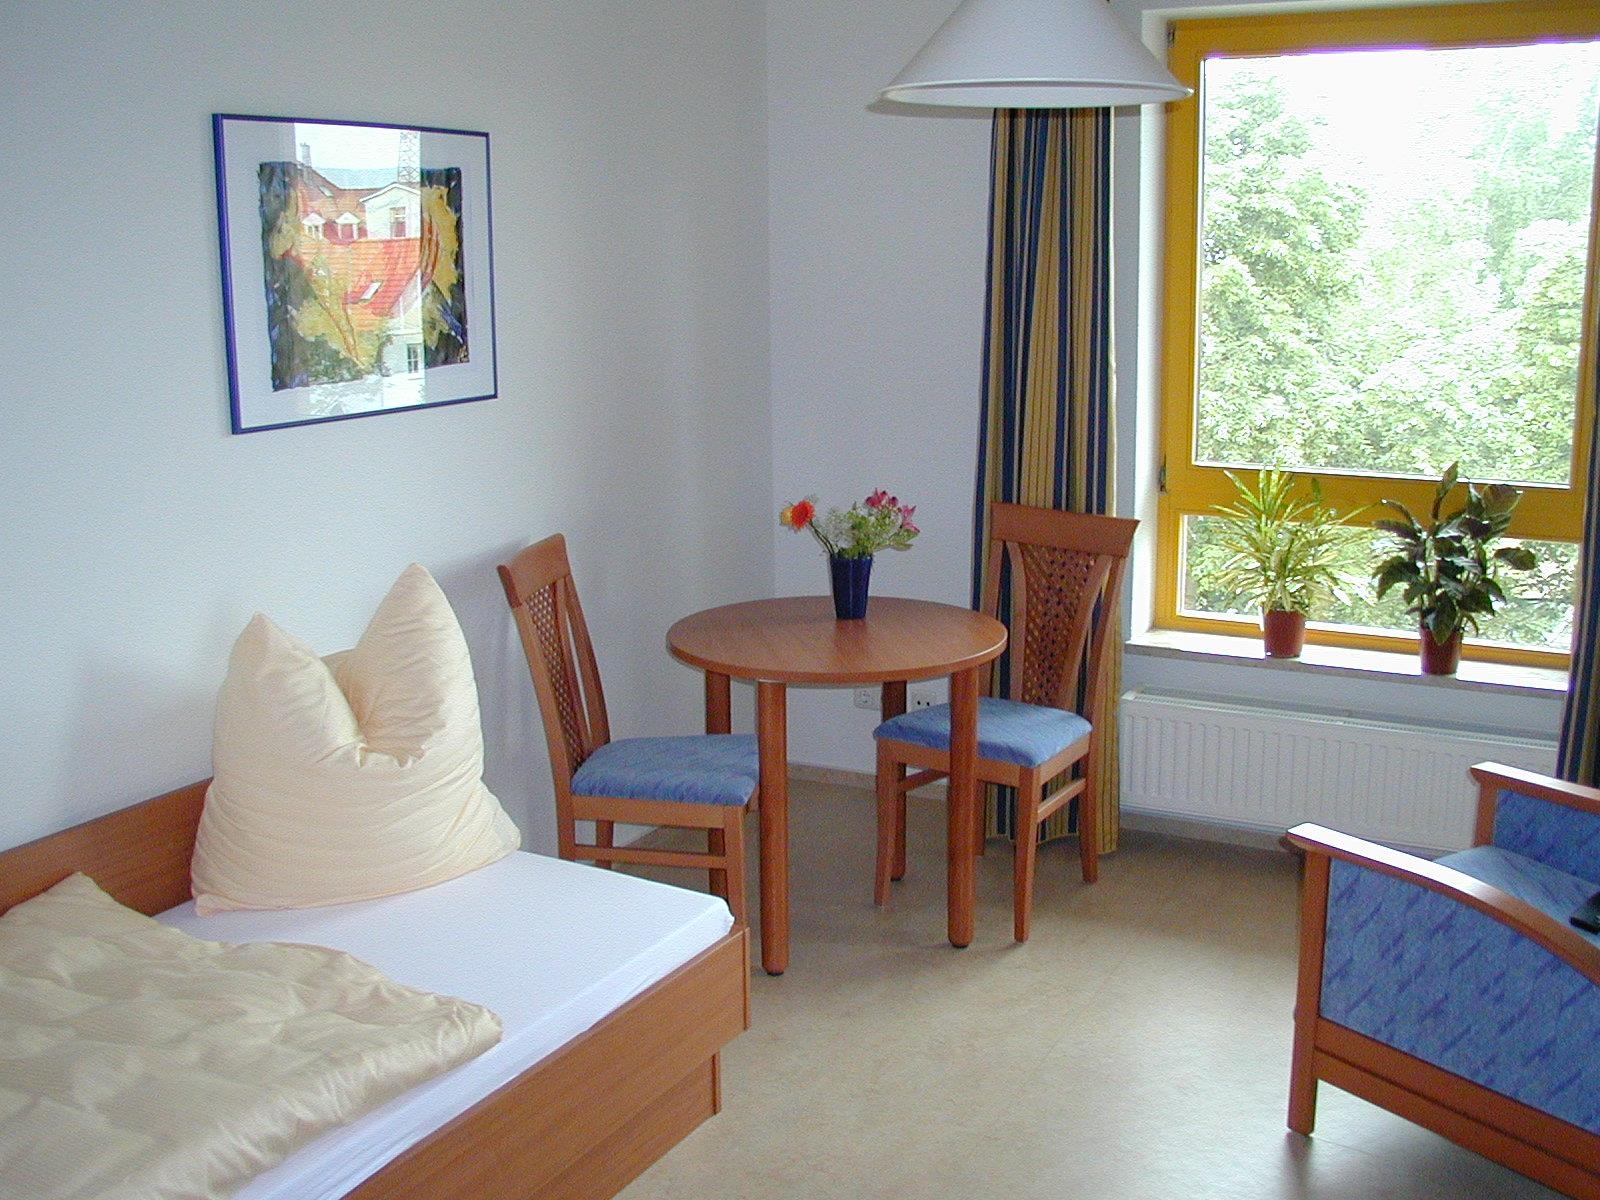 Bild eines eingerichteten Apartments in der Mutter-Kind Kurklinik Stella Maris in Kühlungsborn